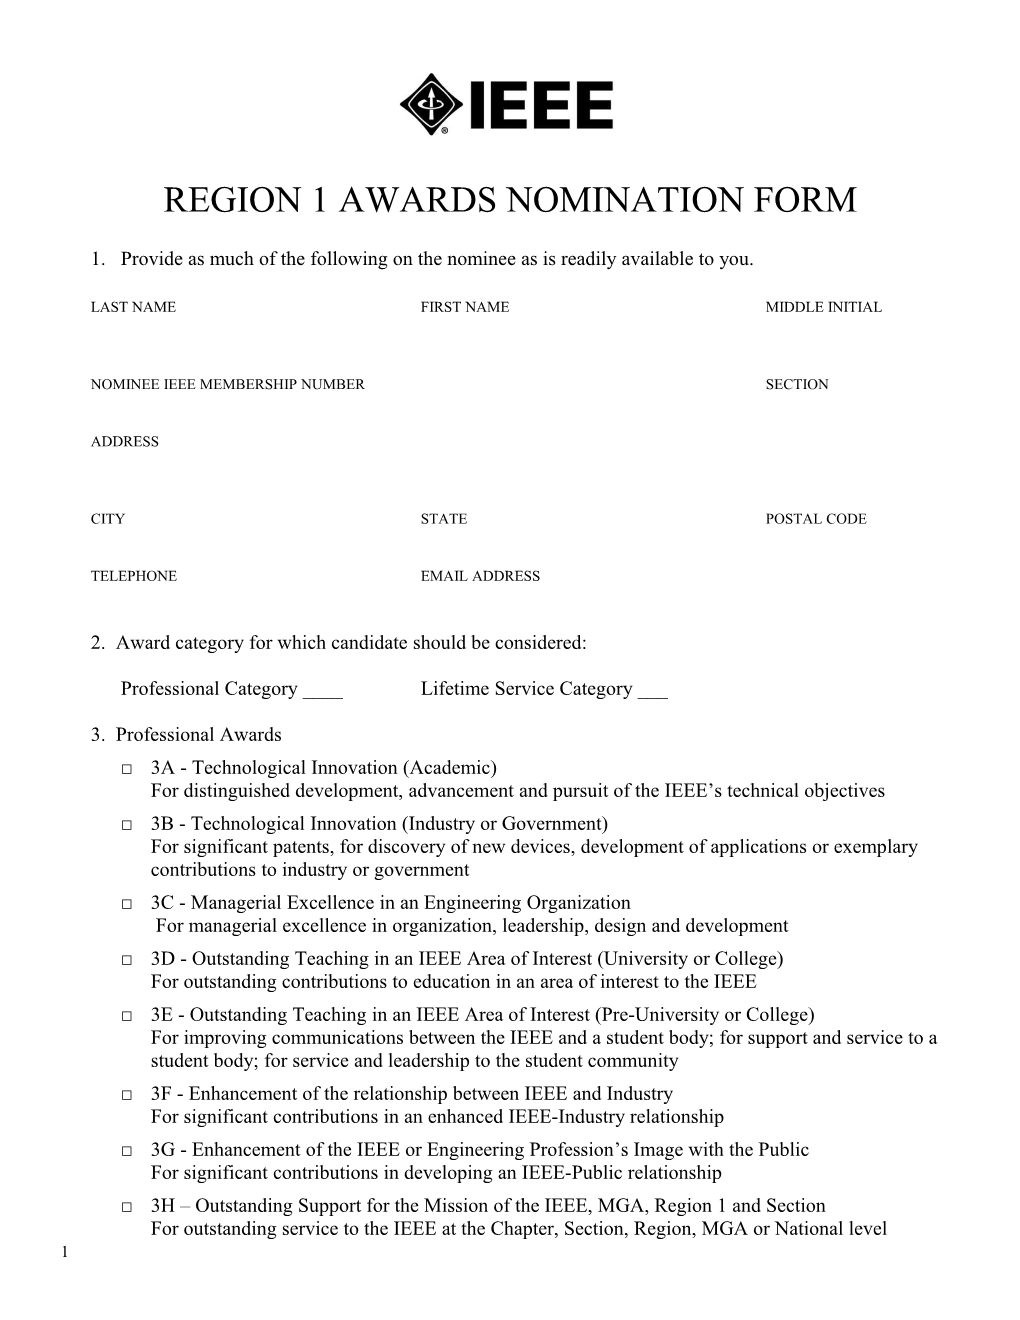 Region 1 Awards Nomination Form